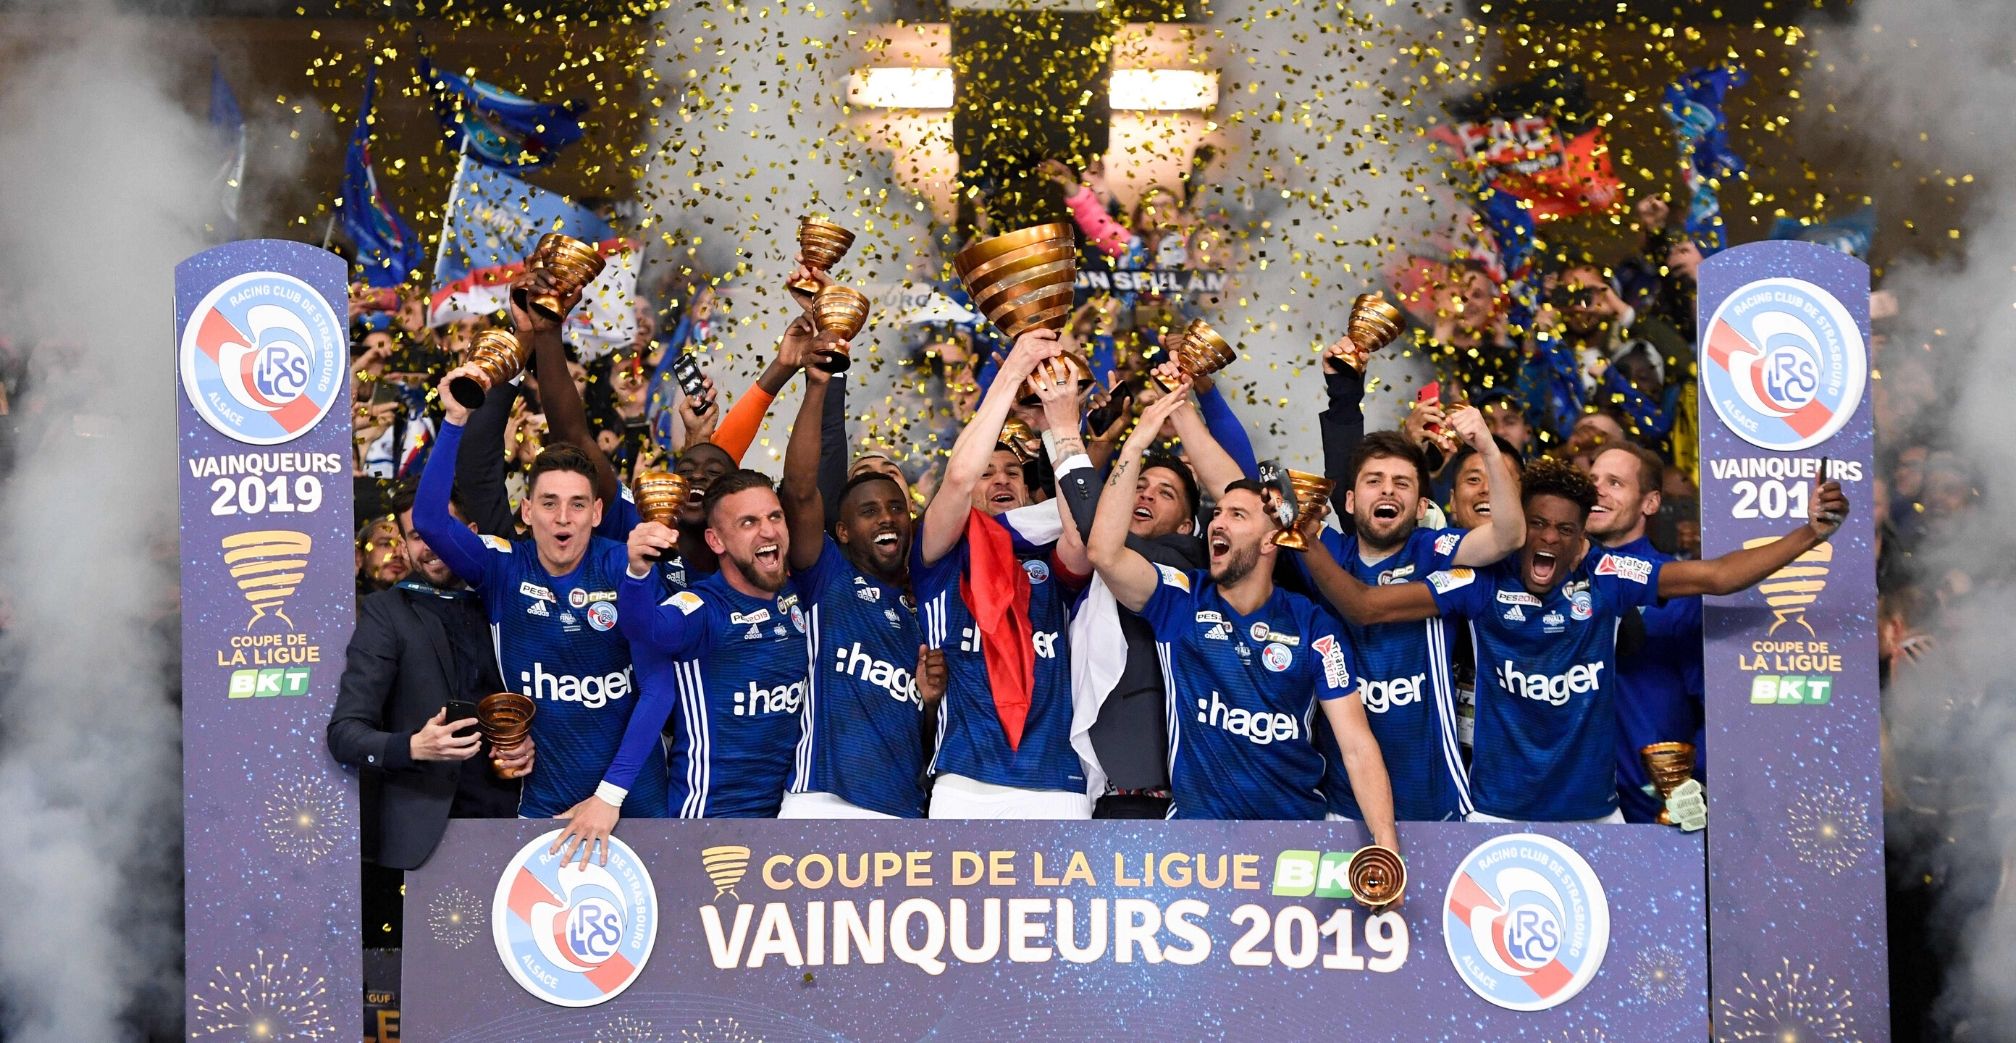 Strasbourg 2019 Coupe de la Ligue trophy ceremony